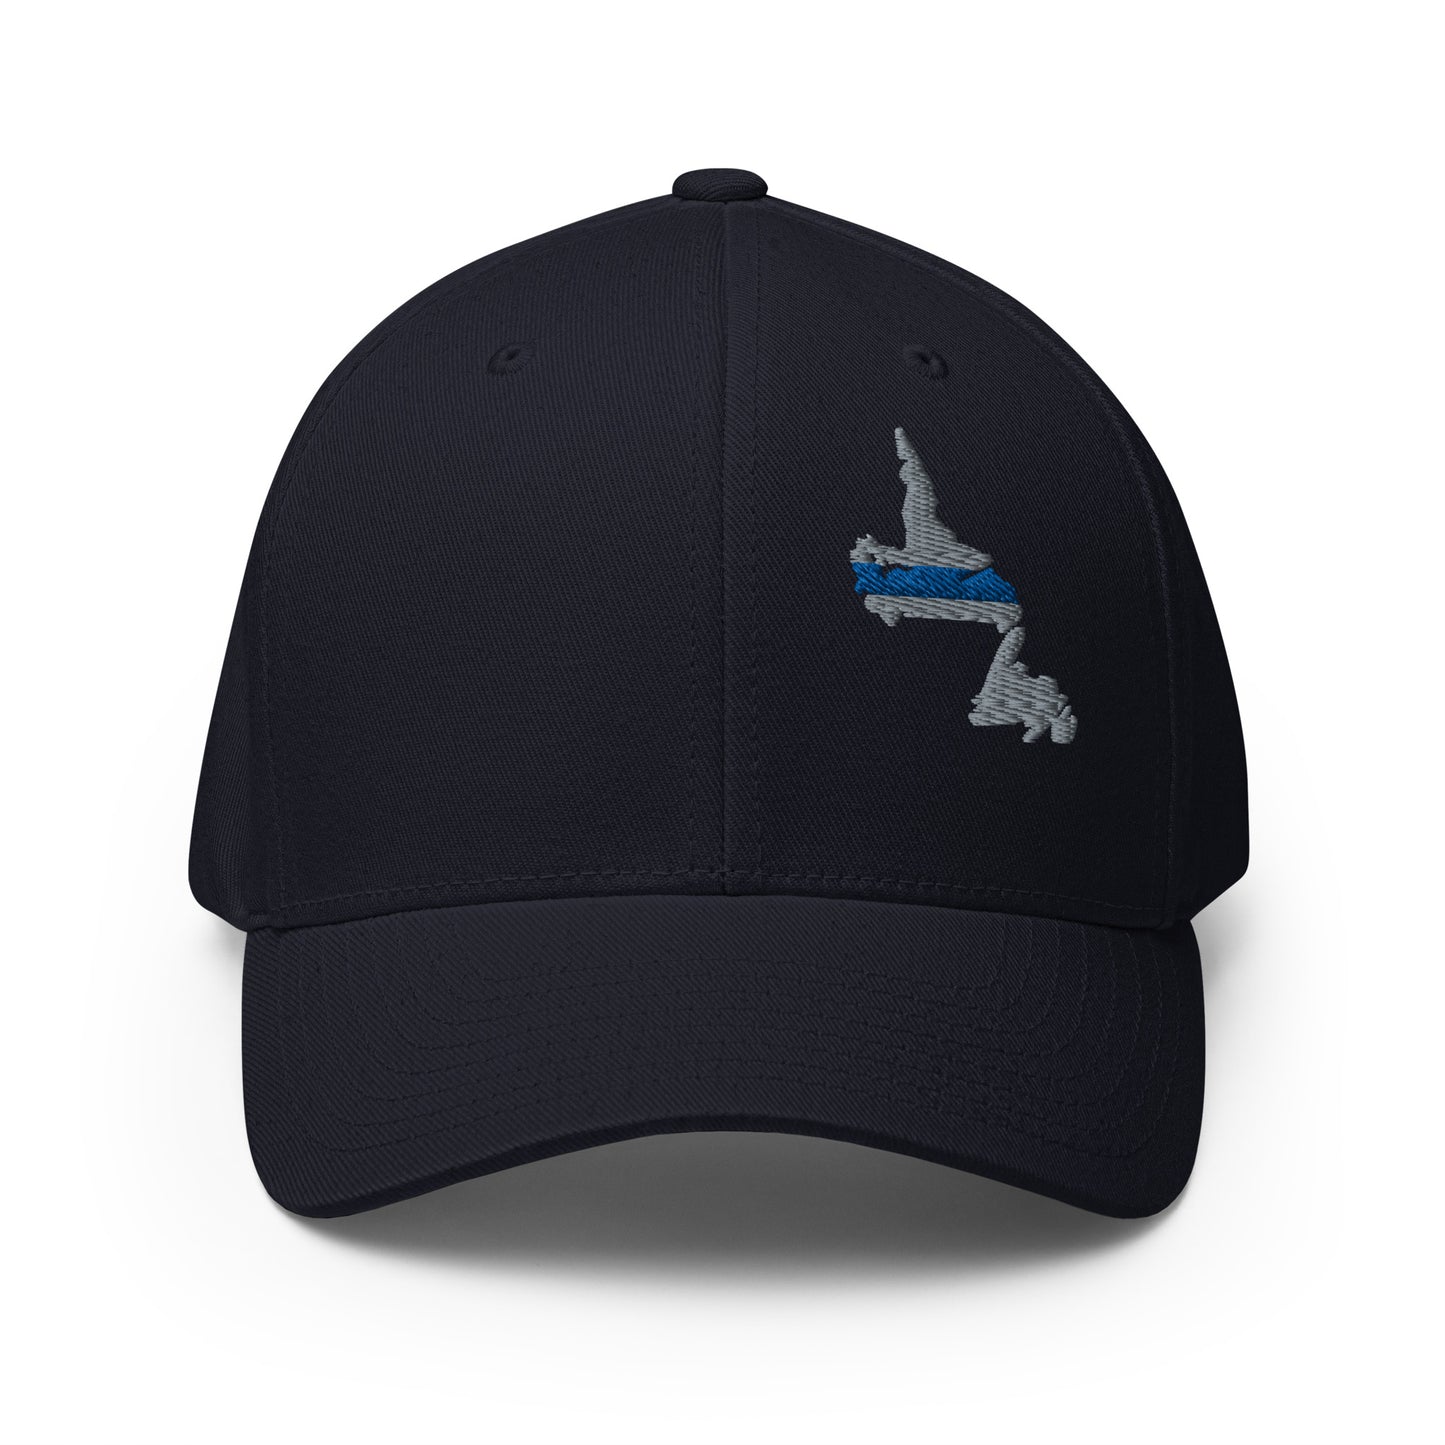 Newfoundland and Labrador (NFLD) Thin Blue Line Flexfit Ball Cap